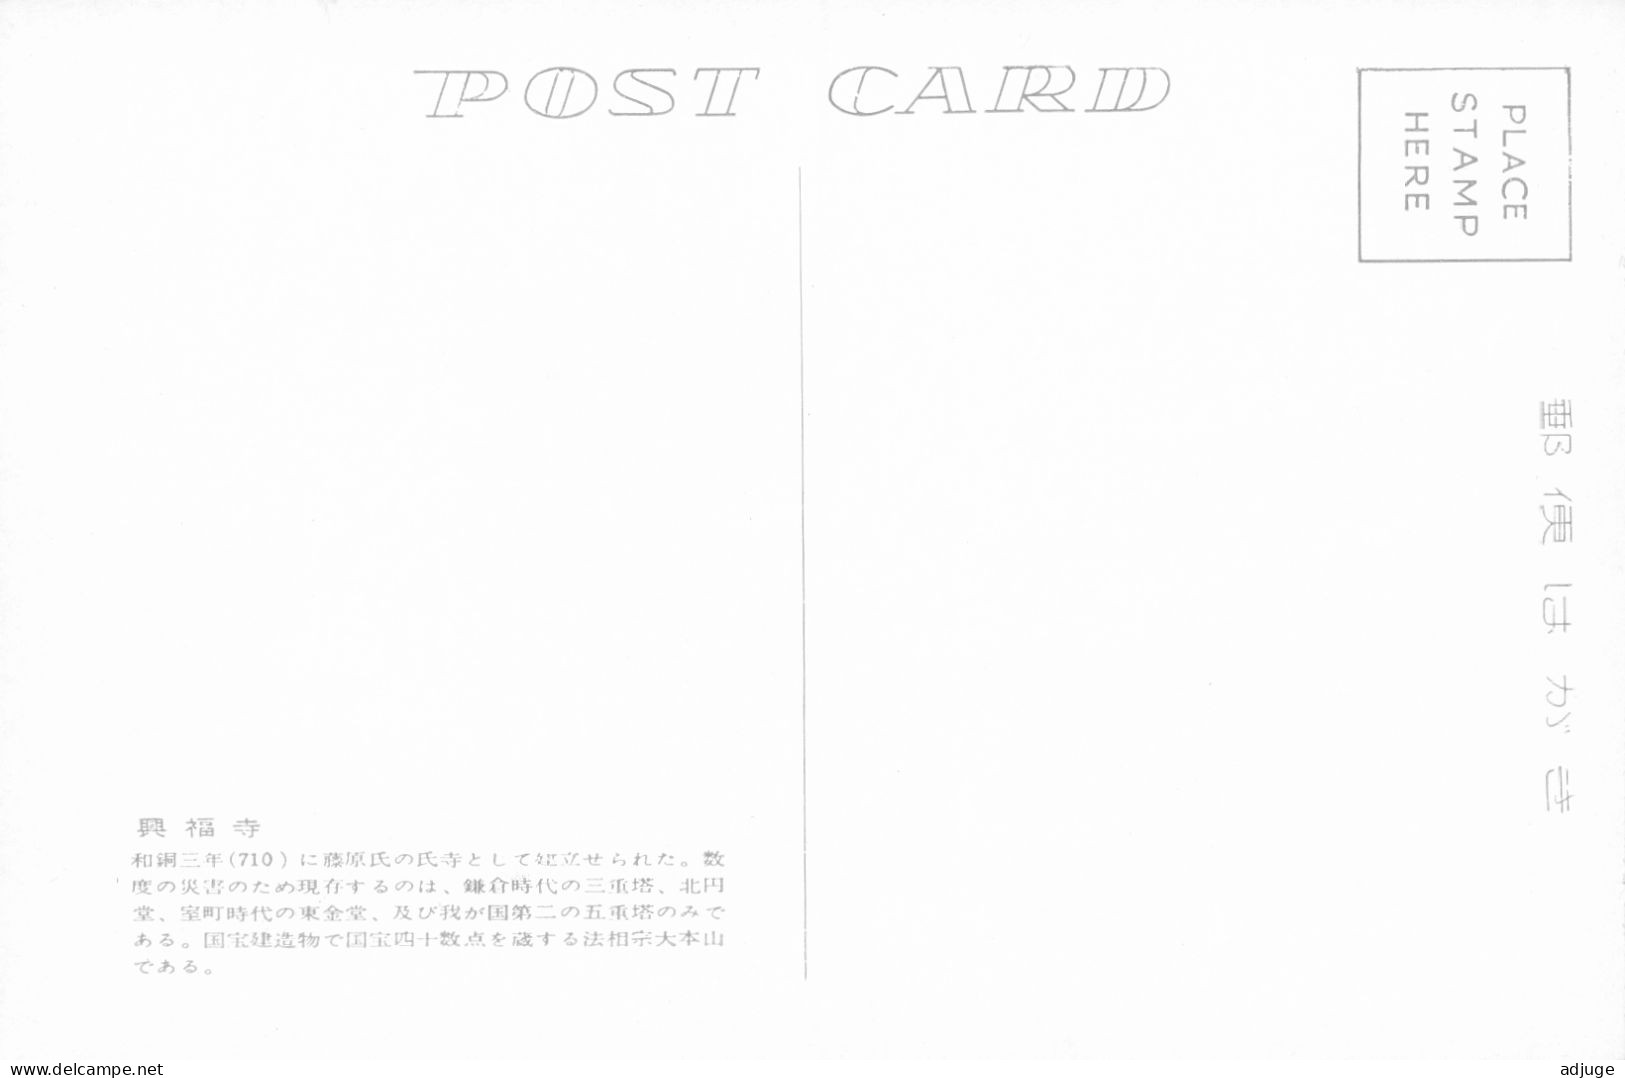 Japon- Lot de 8 cartes de NARA + Pochette * SUP * cf.scans